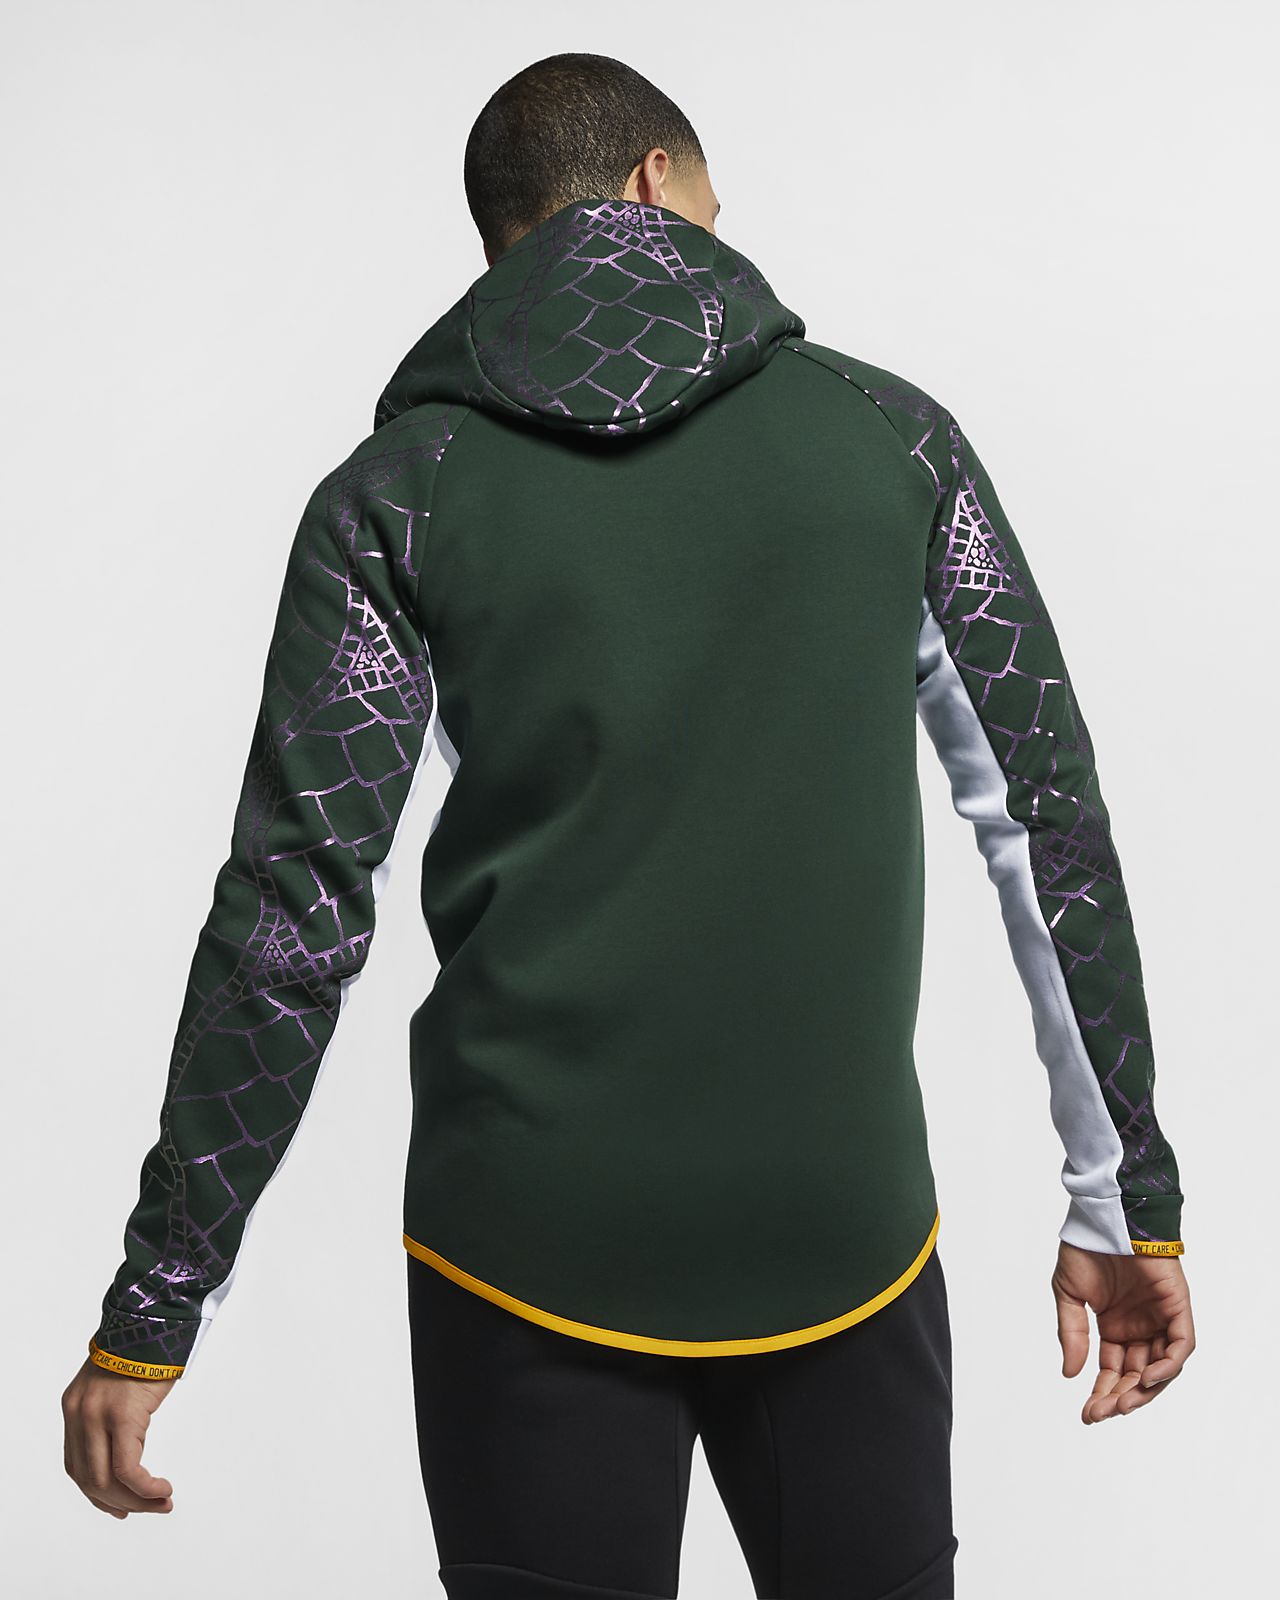 joeys-sportswear-tech-fleece-windrunner-doernbecher-freestyle-mens-full-zip-hoodie-GDfwt6.jpg